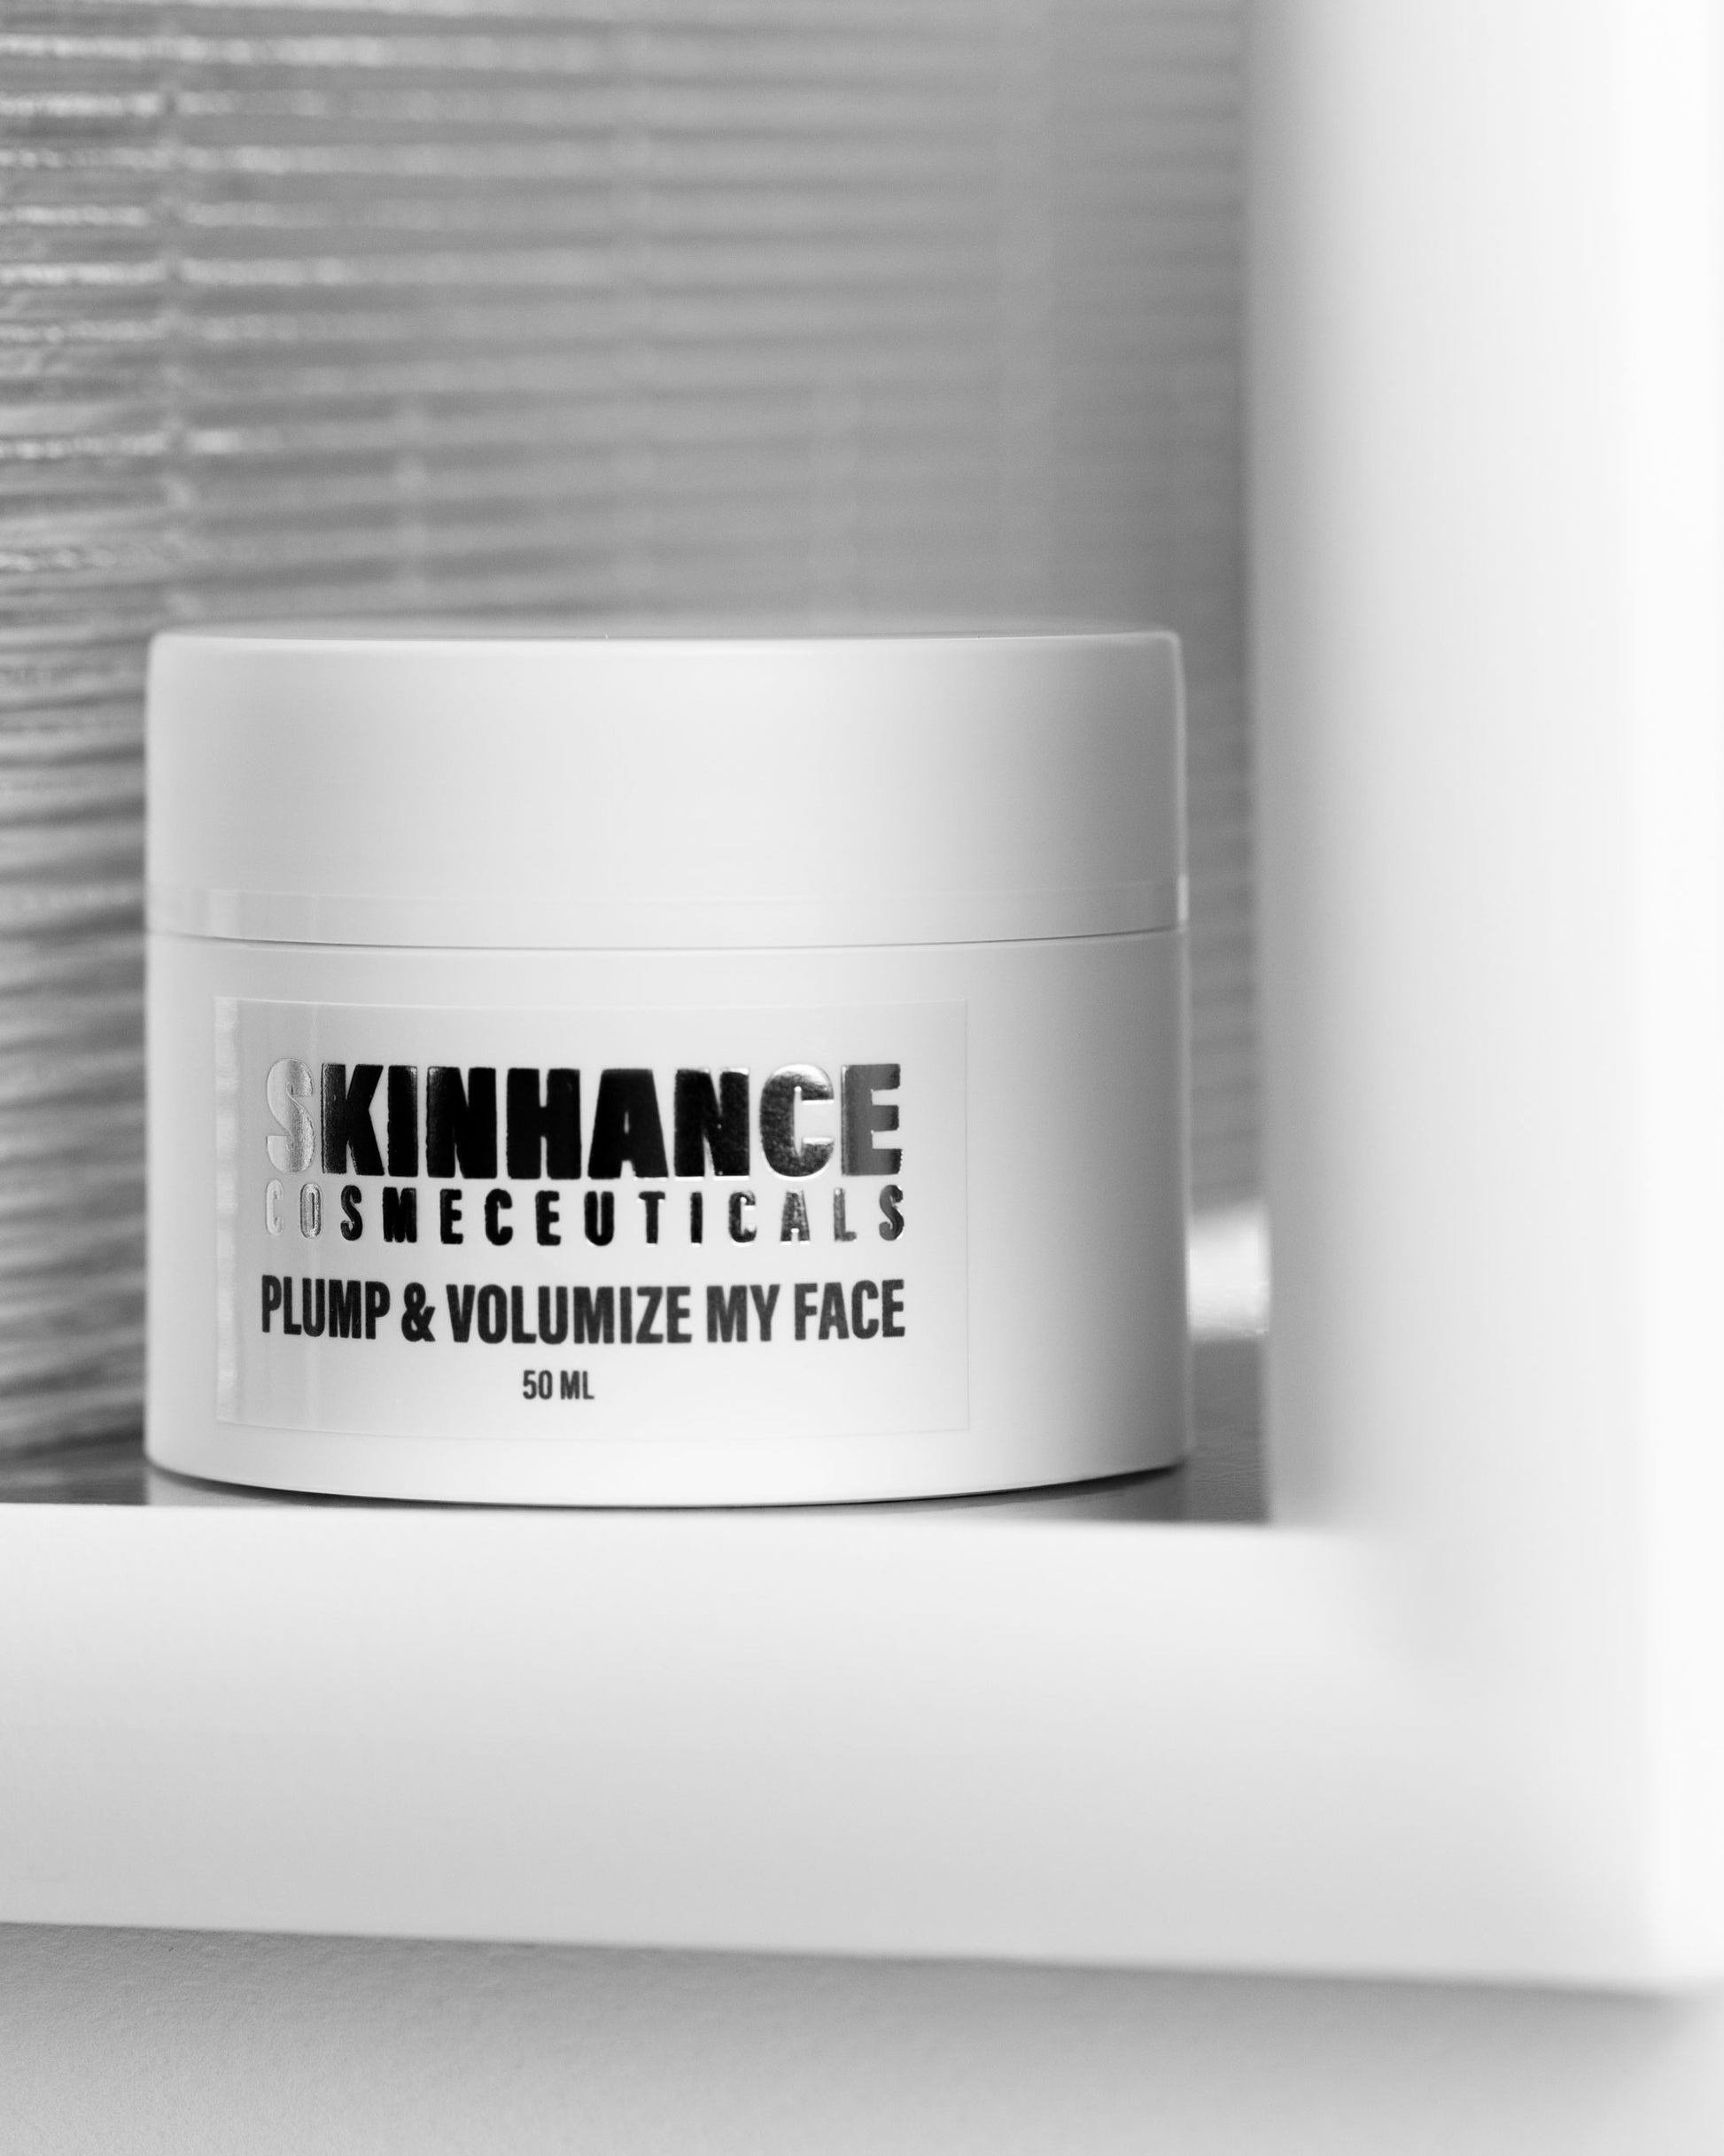 Plump & volumize my face – Skinhance